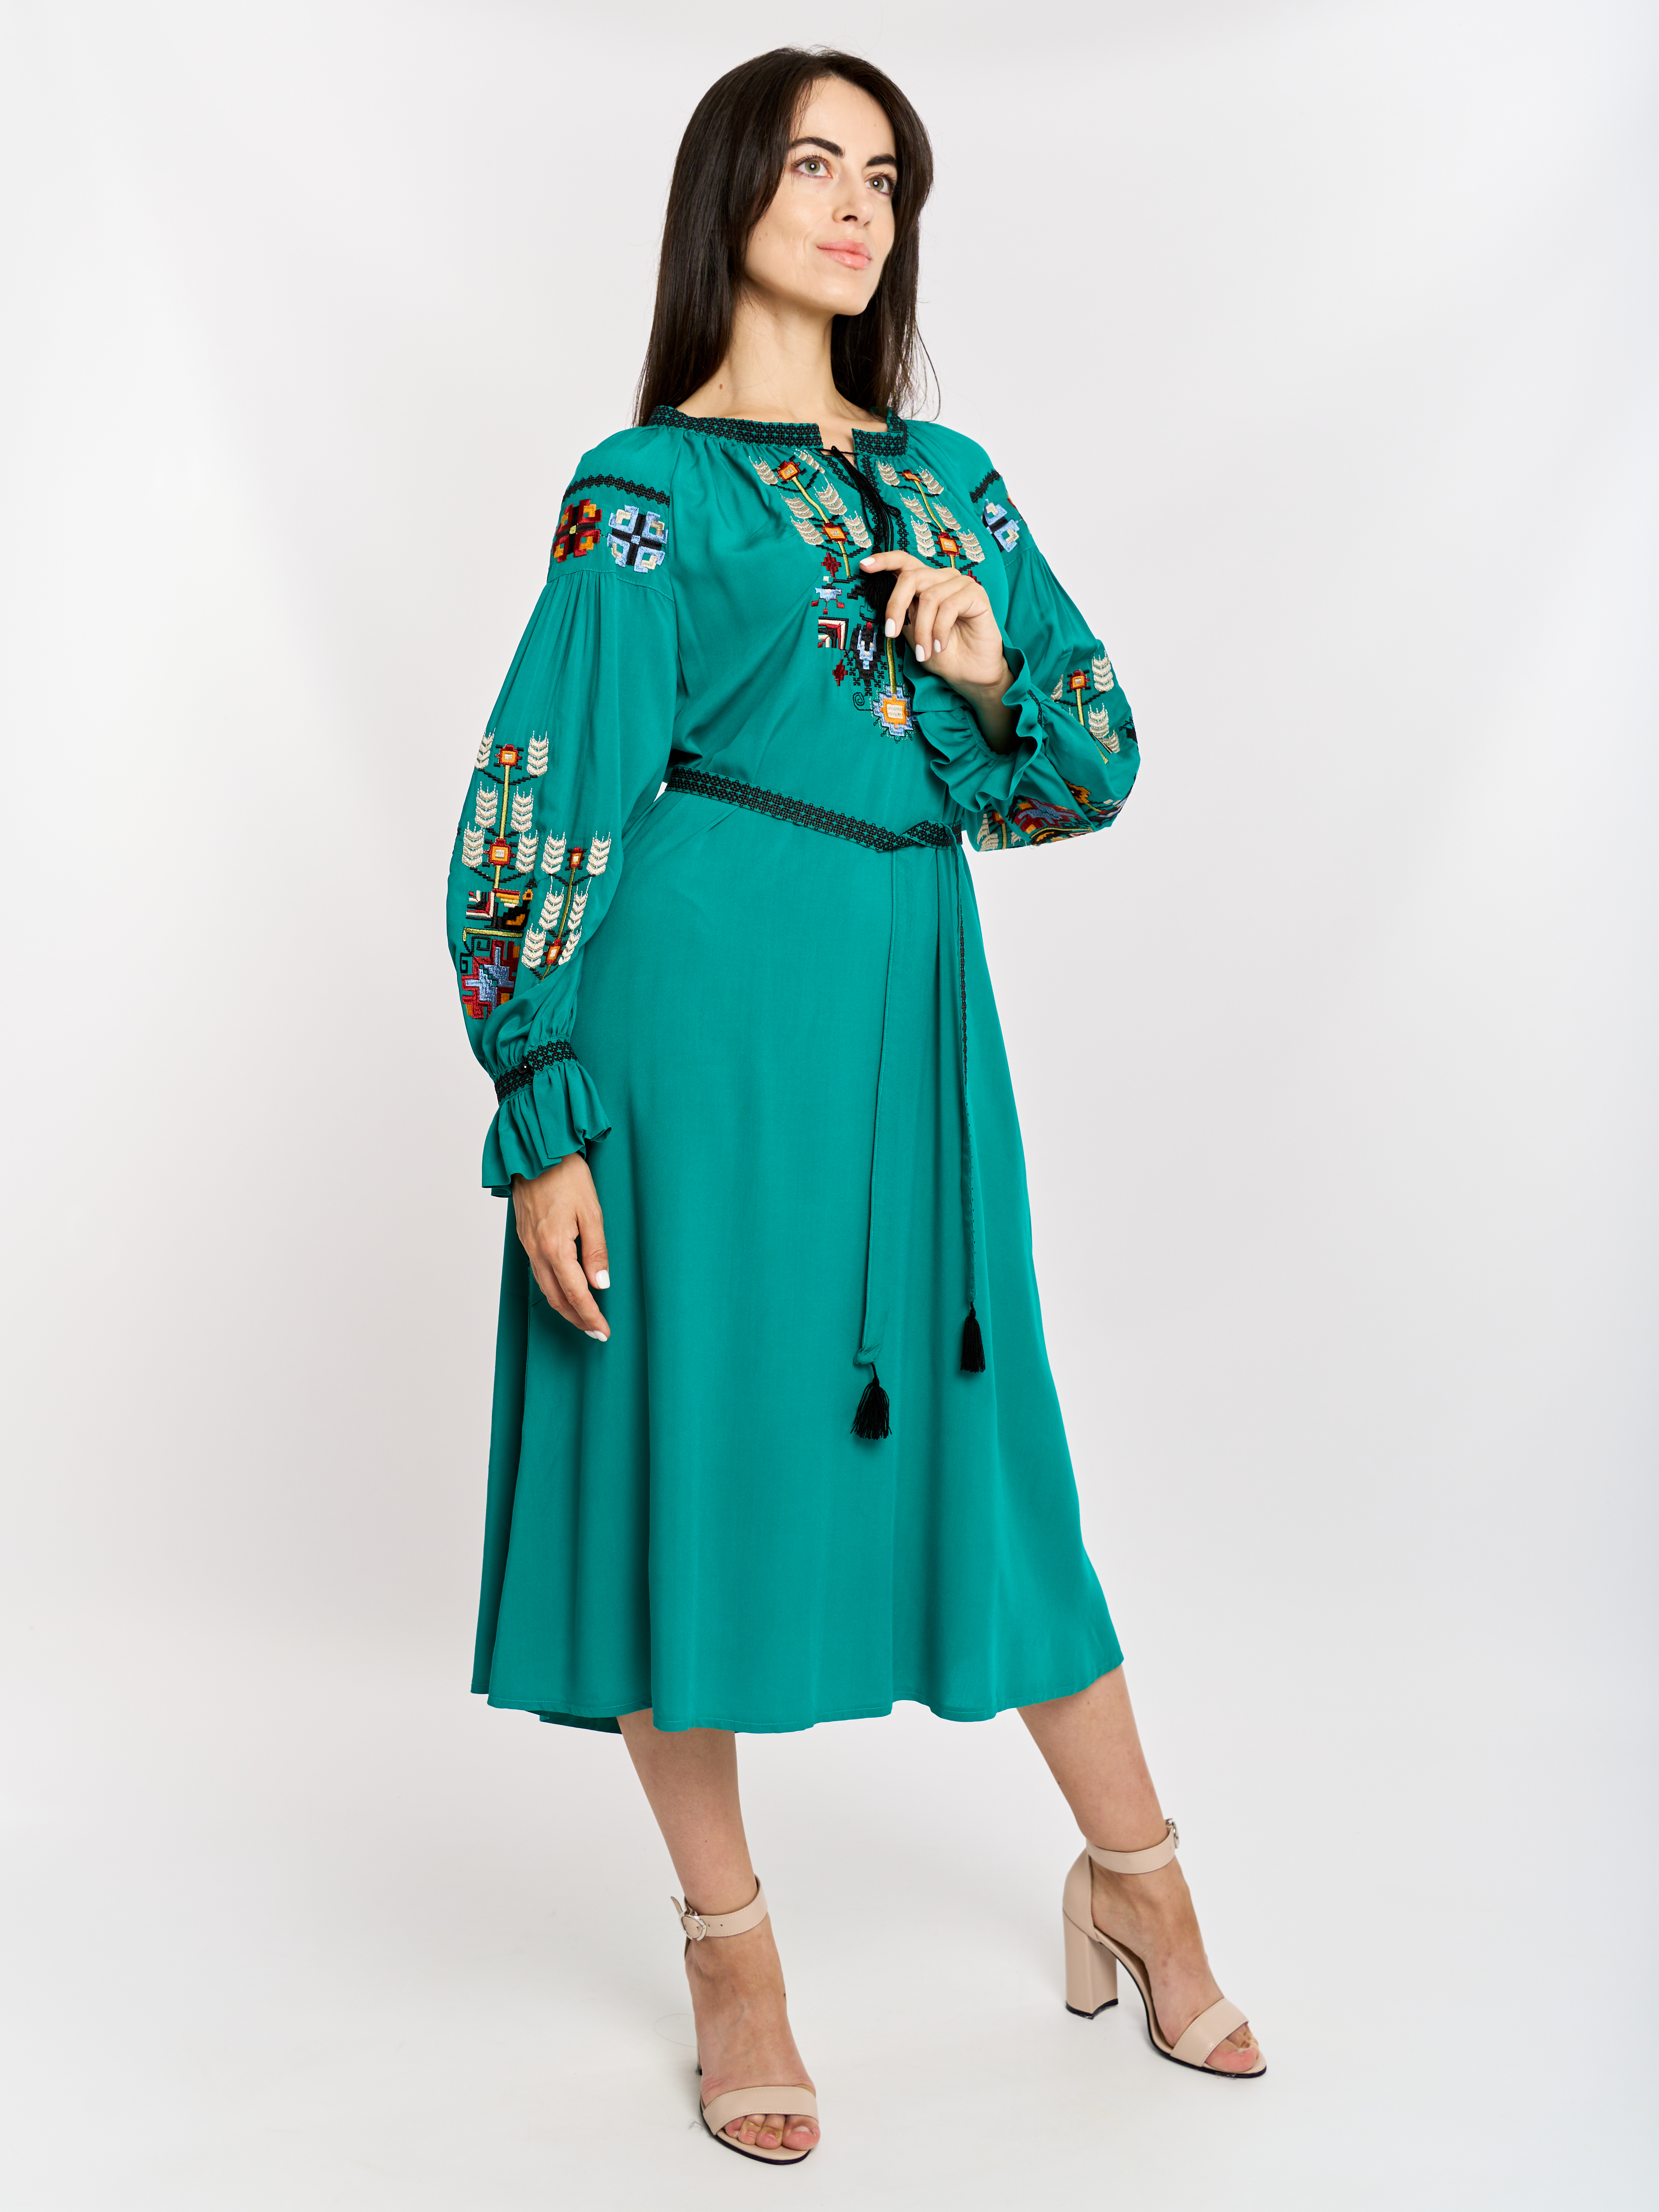 Картинка Вишита сукня зелена 